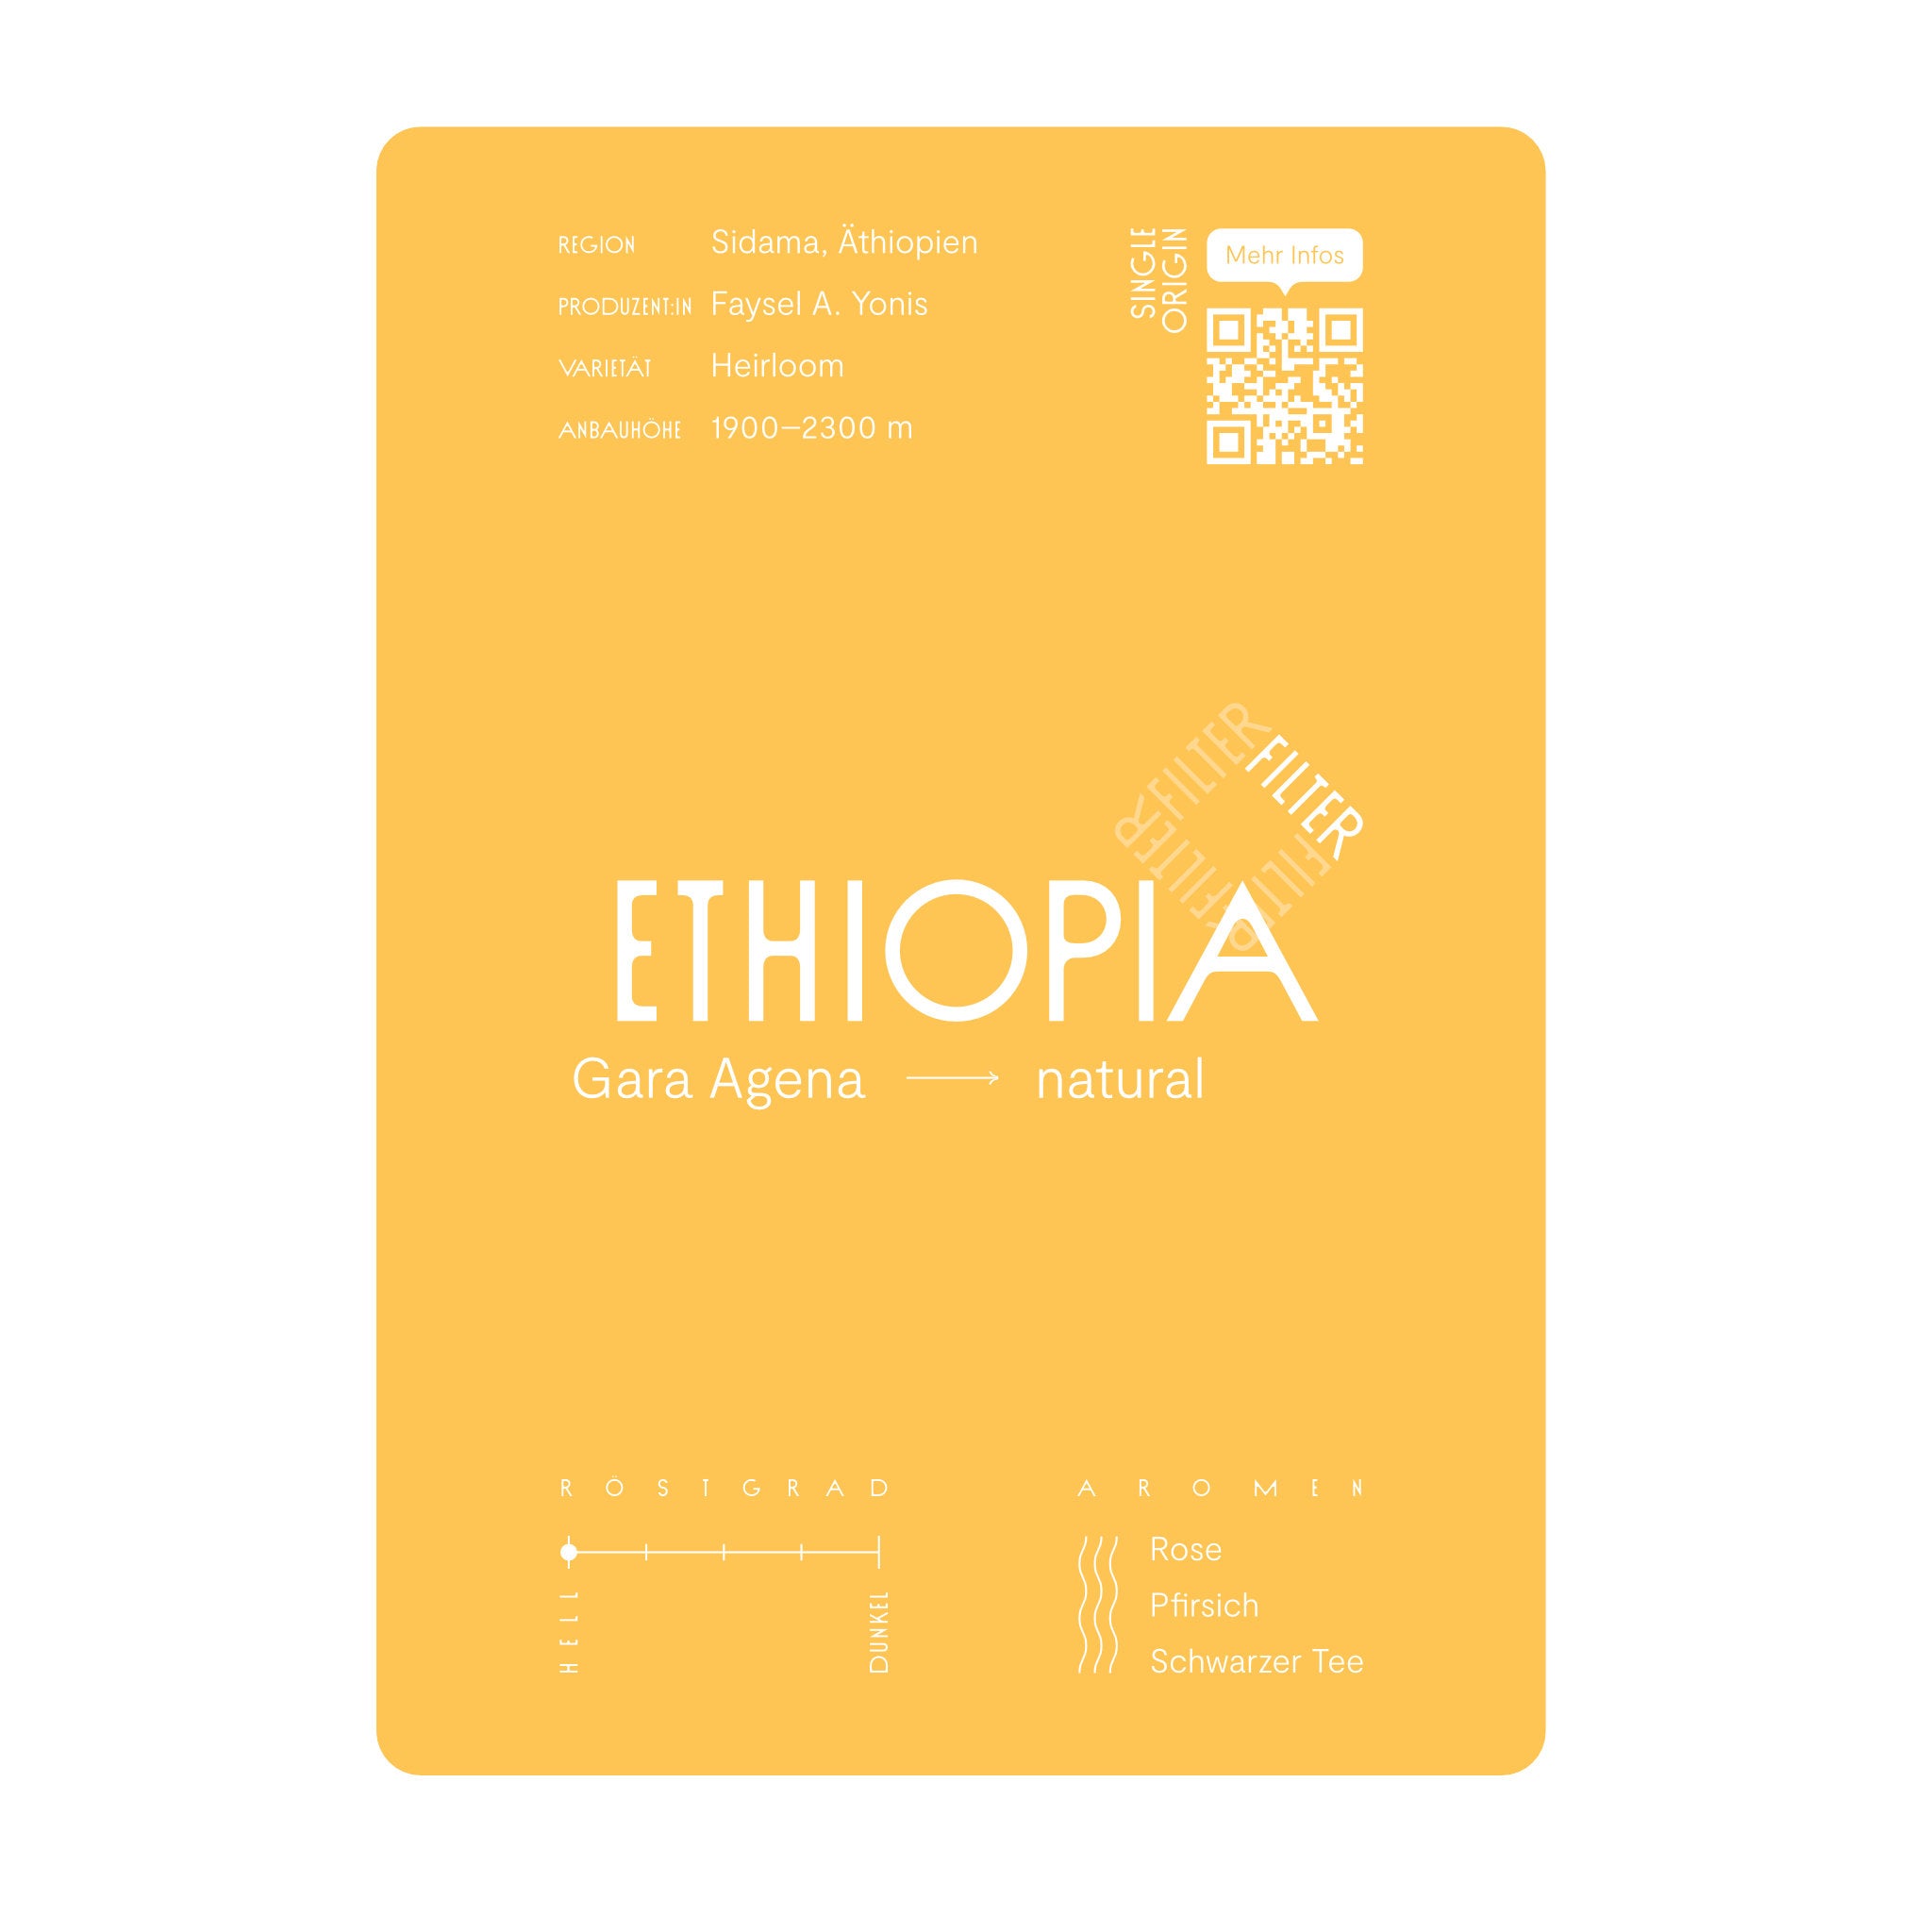 Infokarte Ethiopia Gara Agena, natürlich aufbereiteter Kaffee, hell geröstet zur Filterkaffeezubereitung. Noten von Rose, Pfirsich und schwarzem Kaffee.